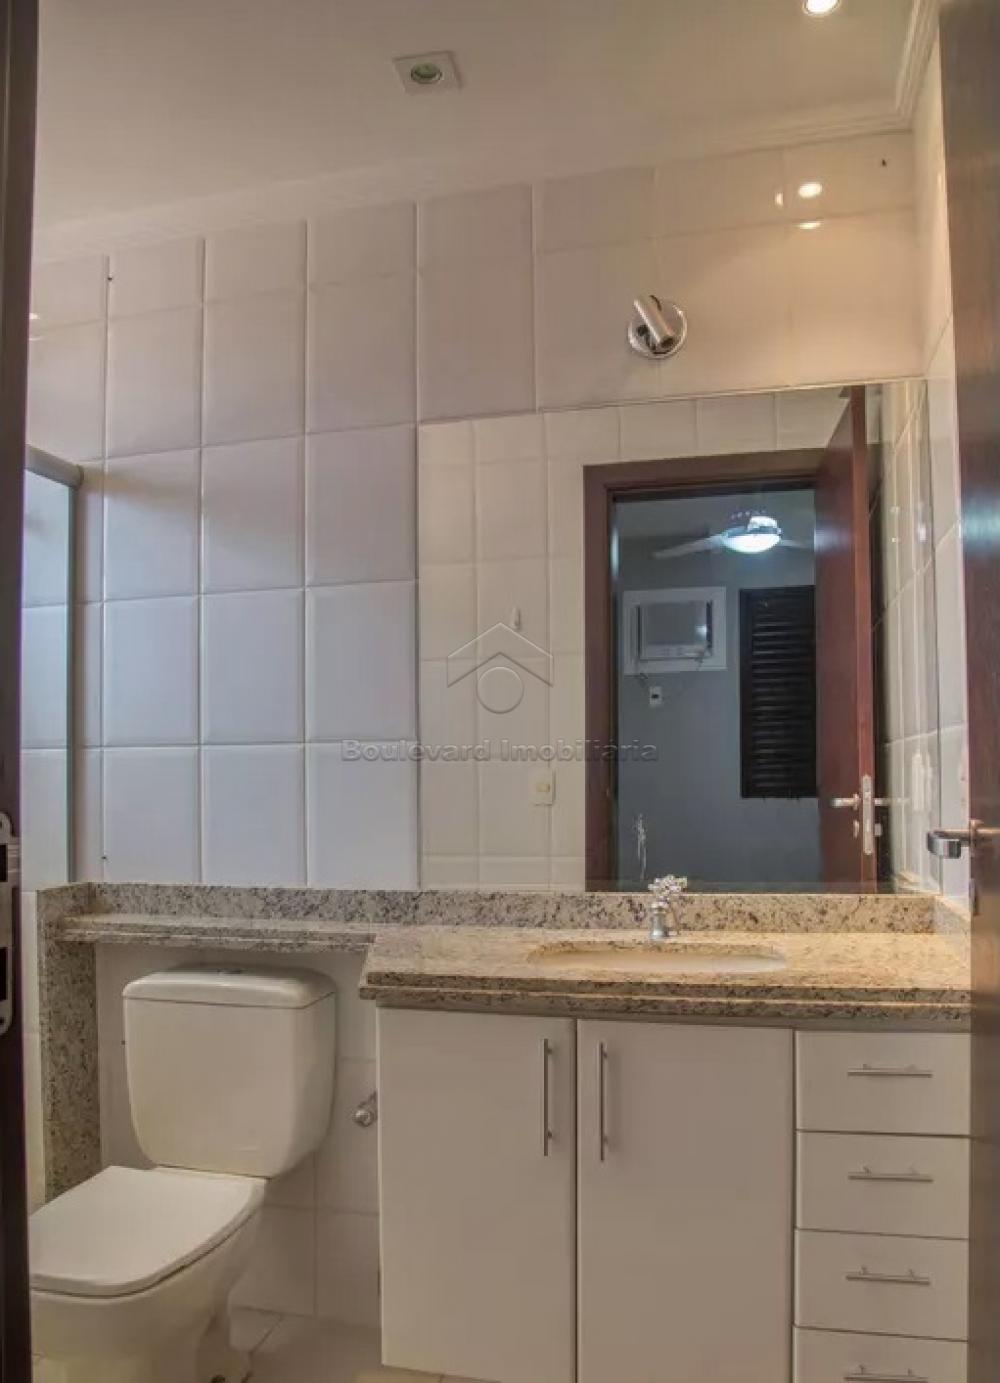 Alugar Apartamento / Padrão em Ribeirão Preto R$ 3.000,00 - Foto 11